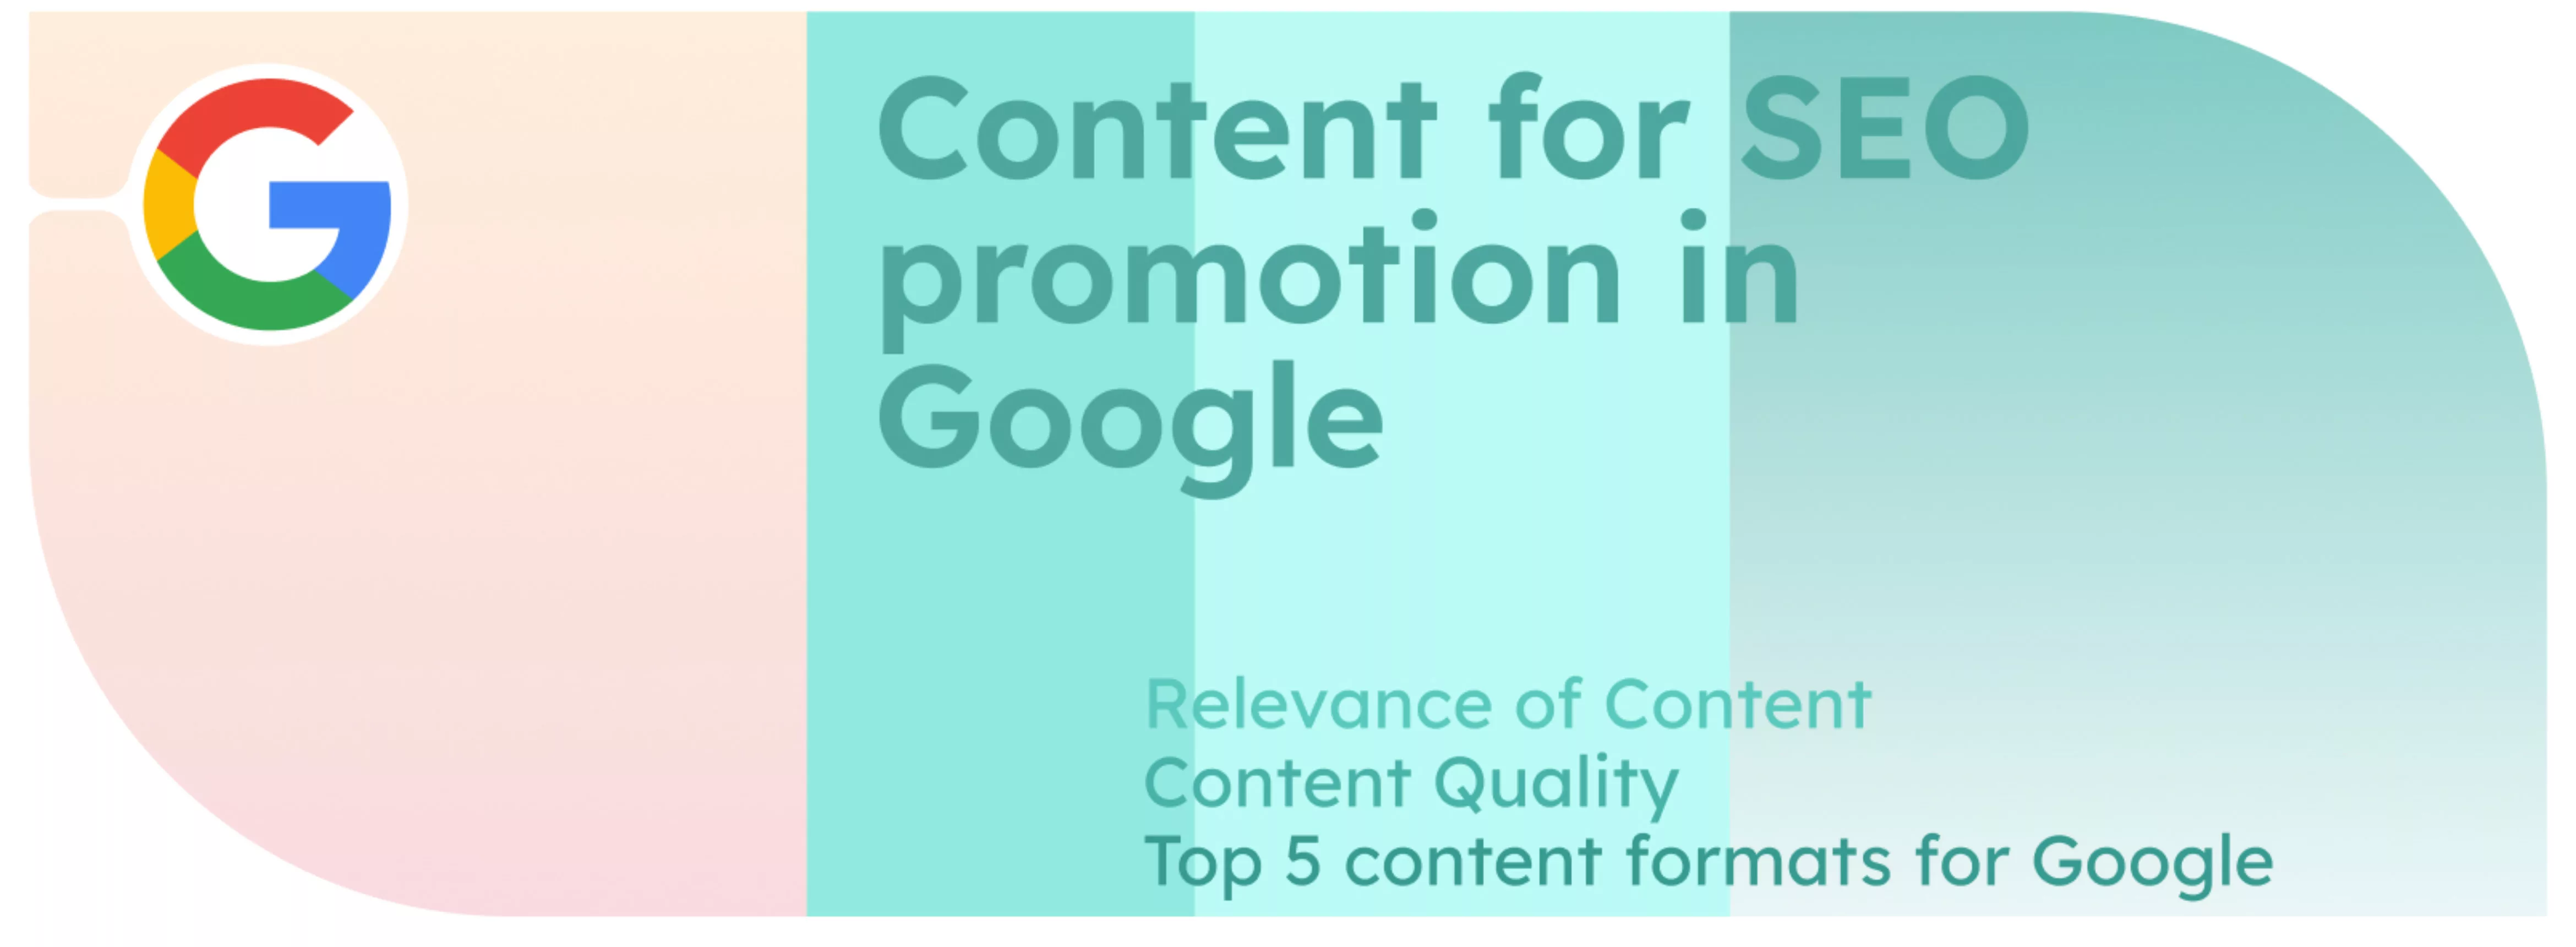 Inhalte für SEO-Promotion in Google